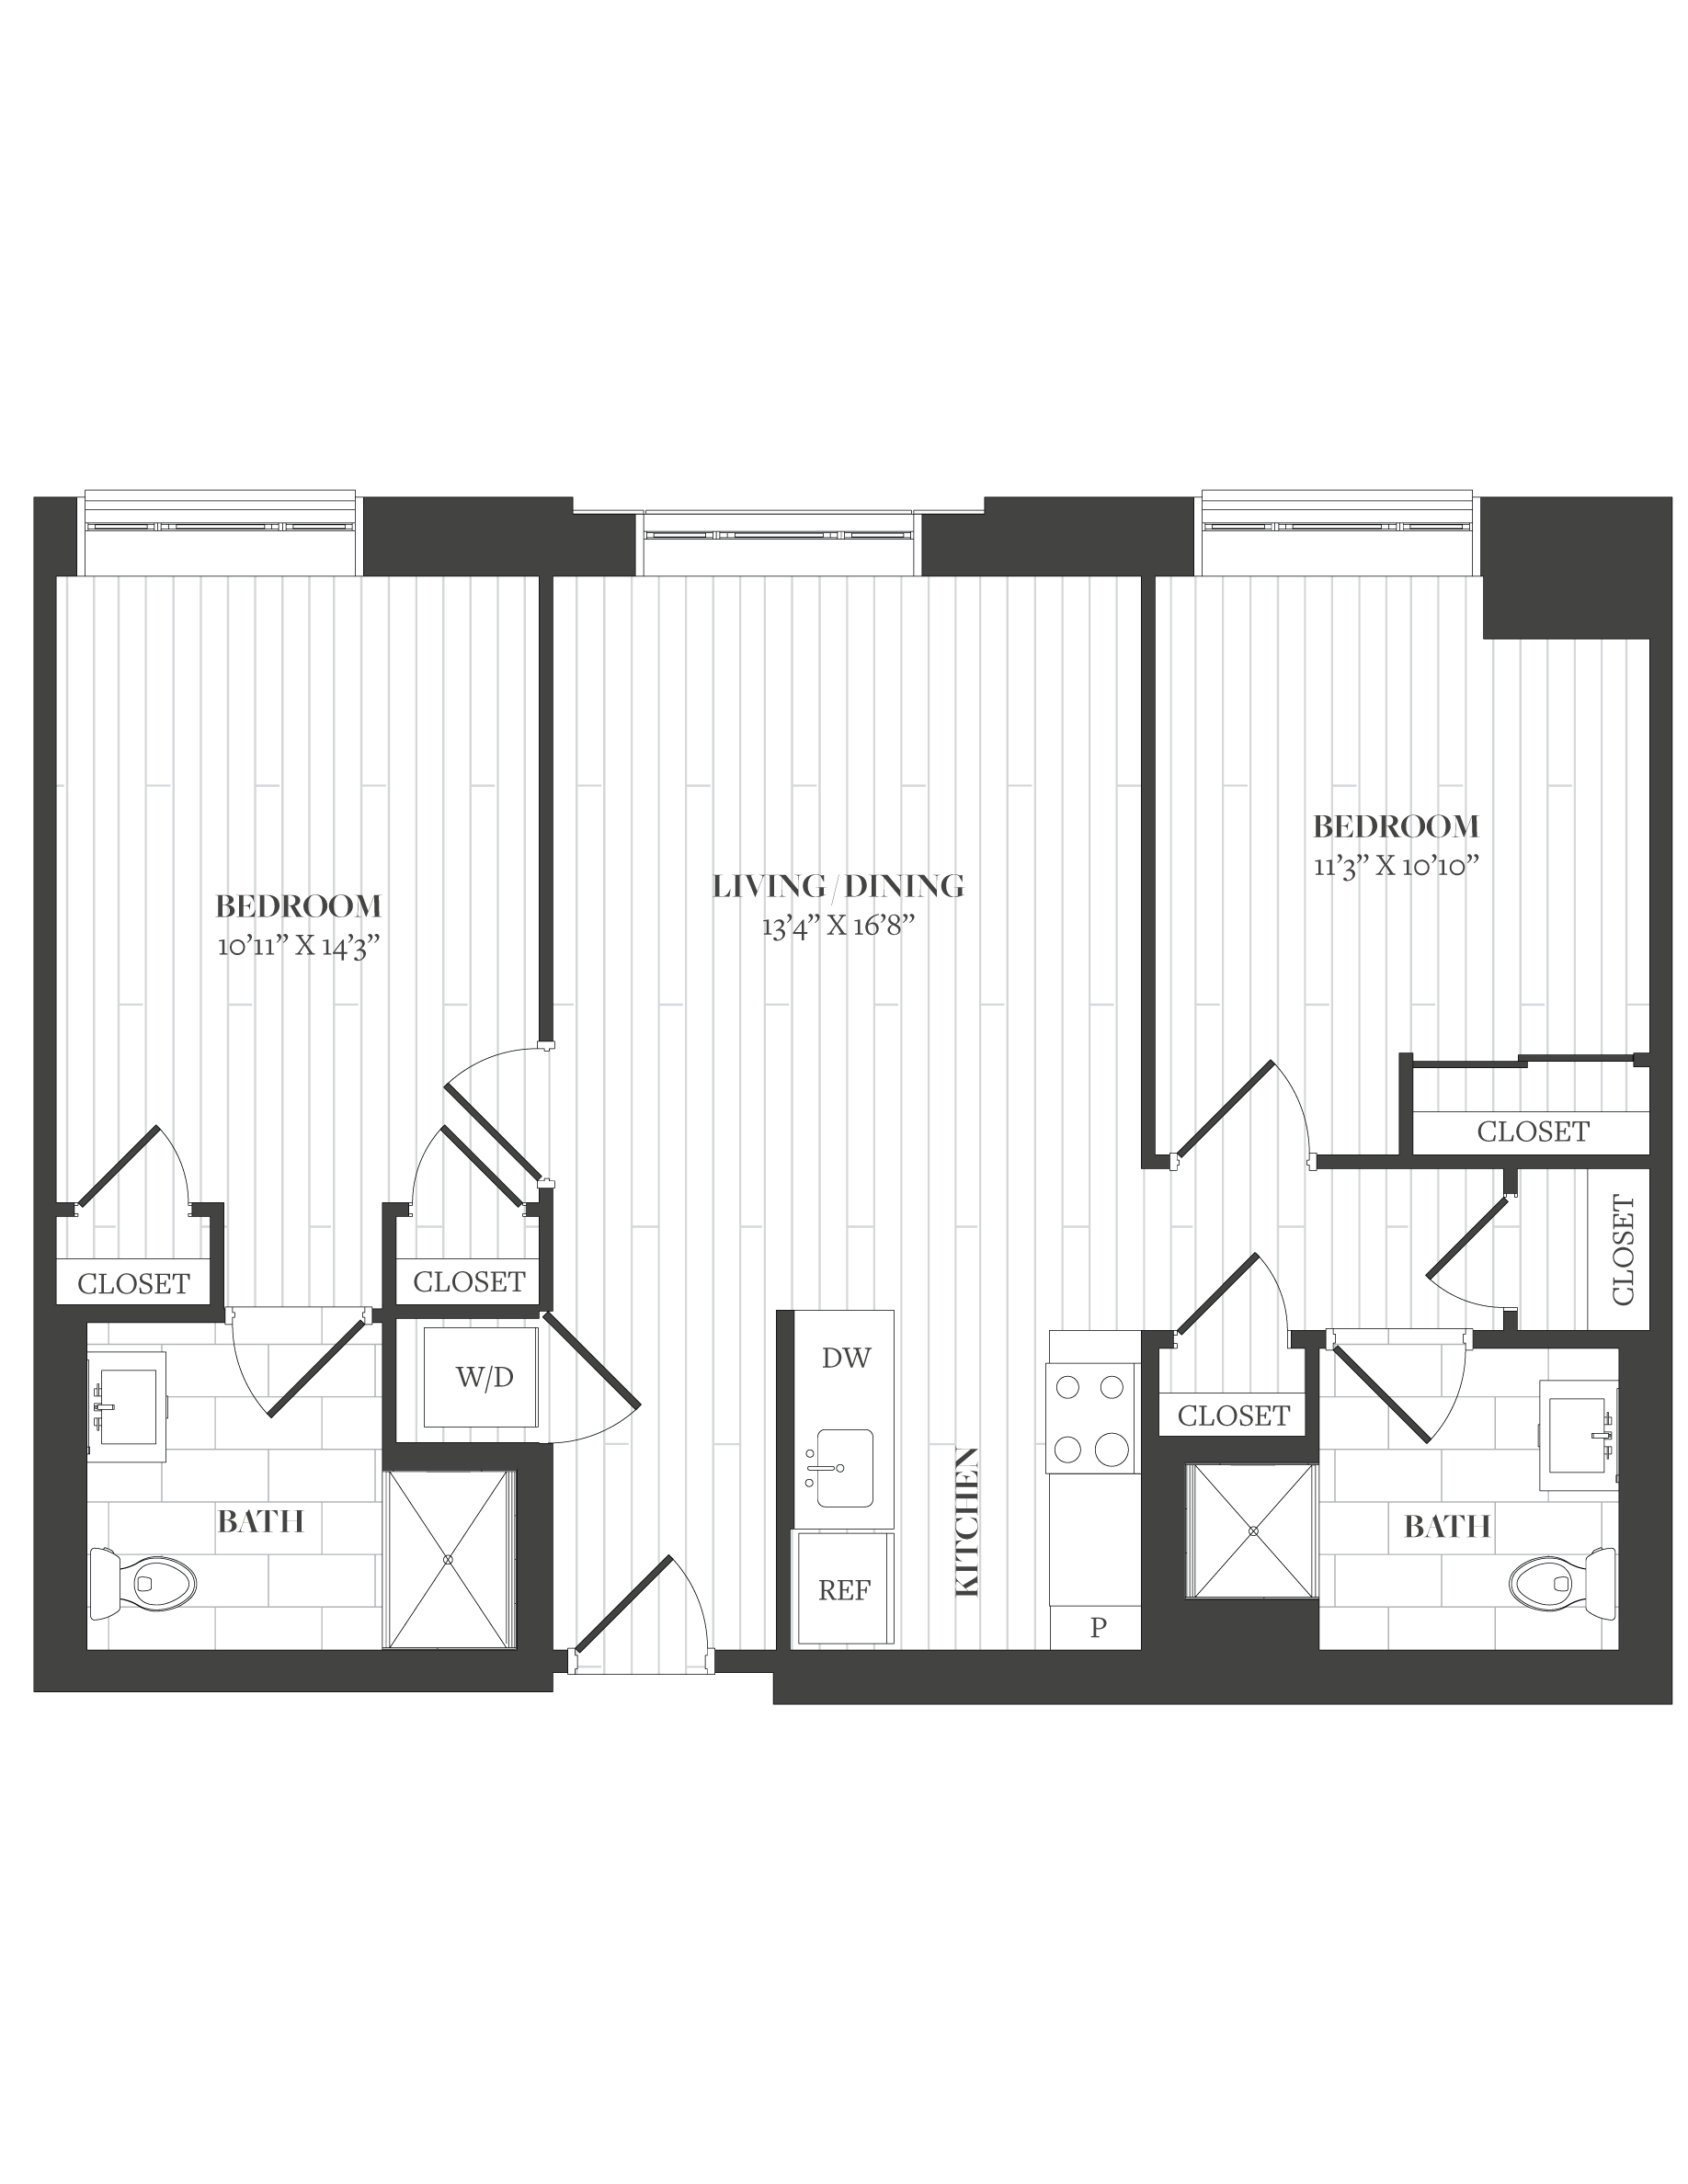 Floorplan image of unit 1106